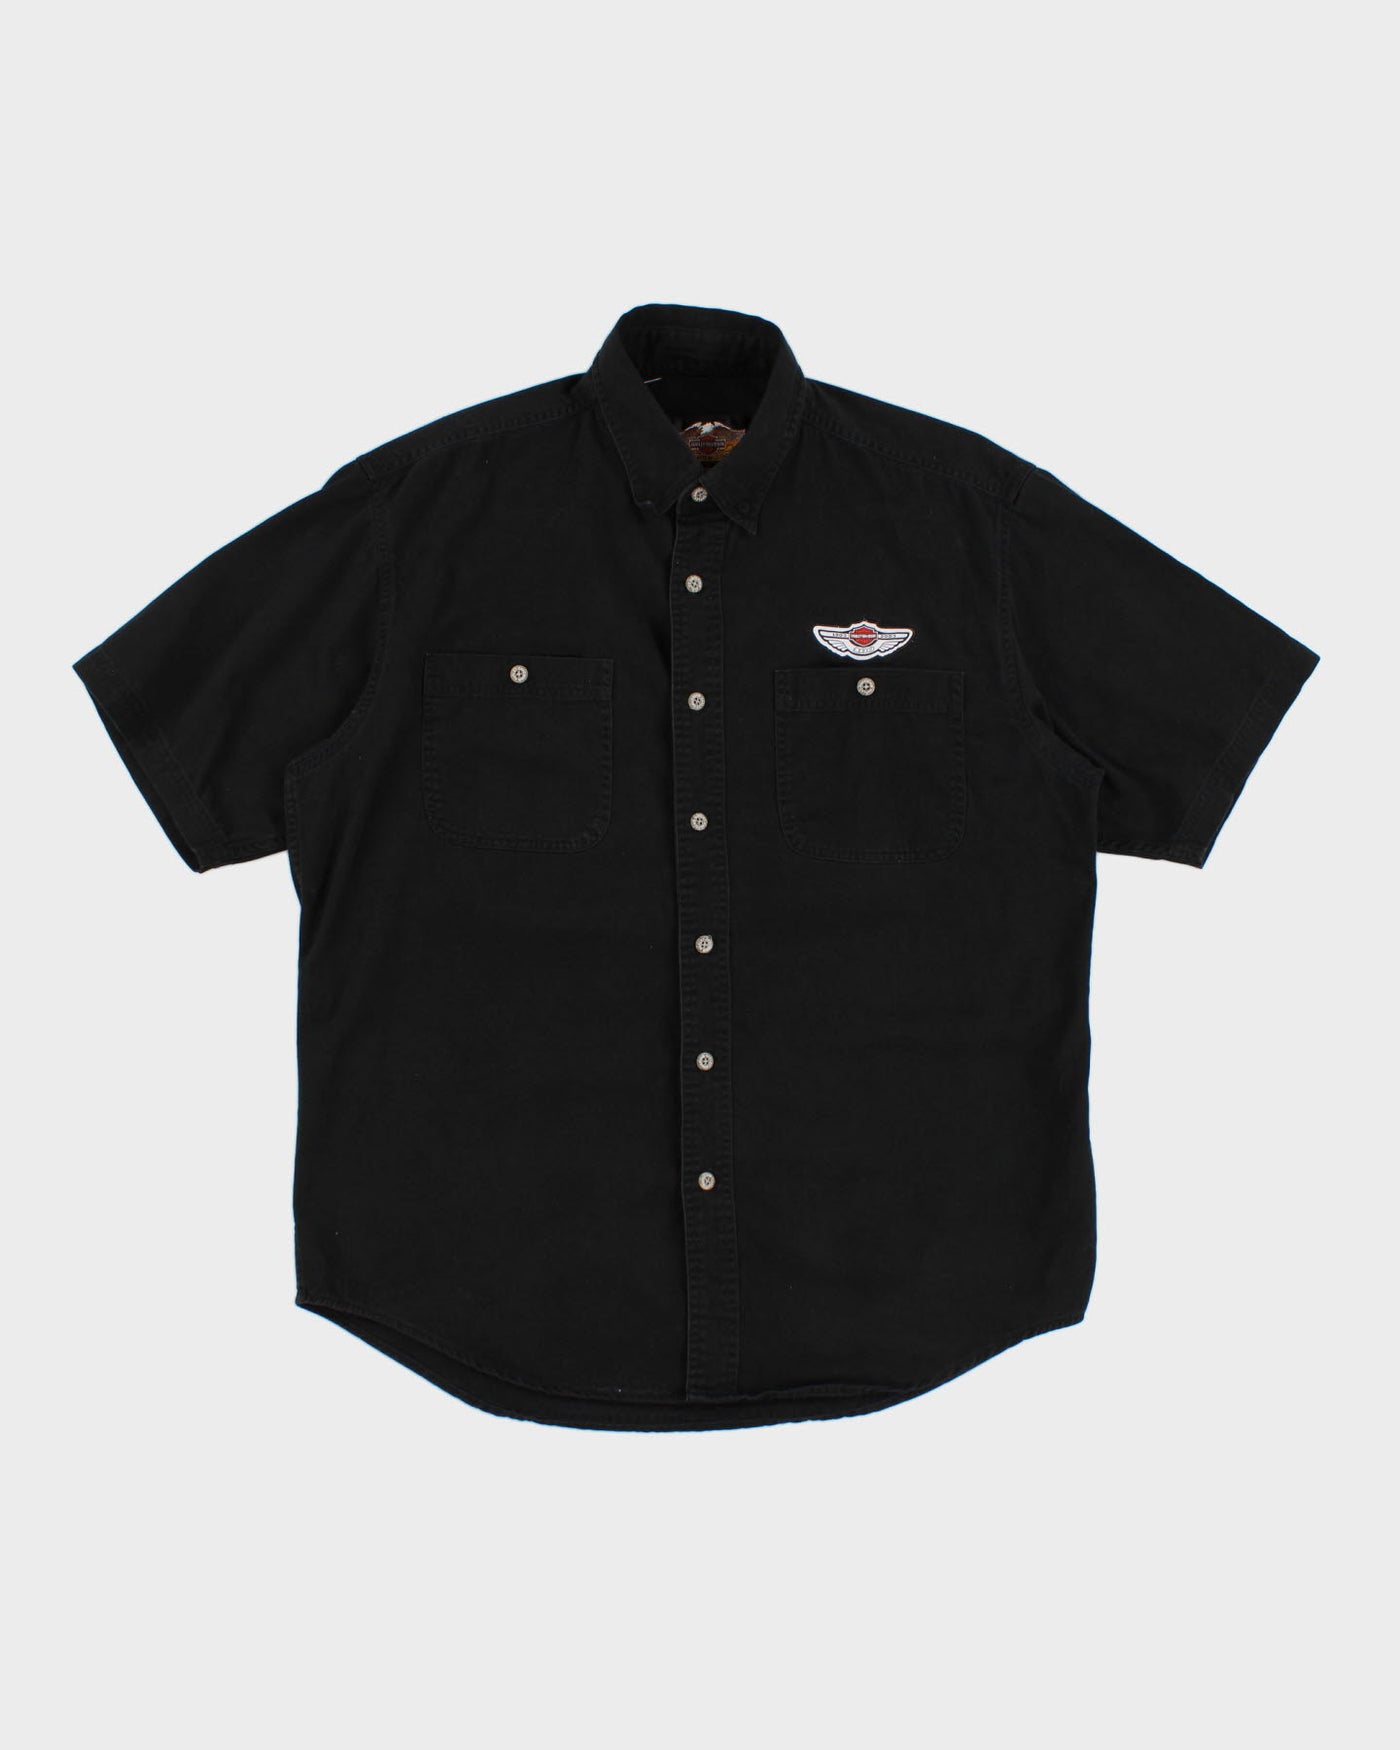 Vintage Black Harley Shirt - L